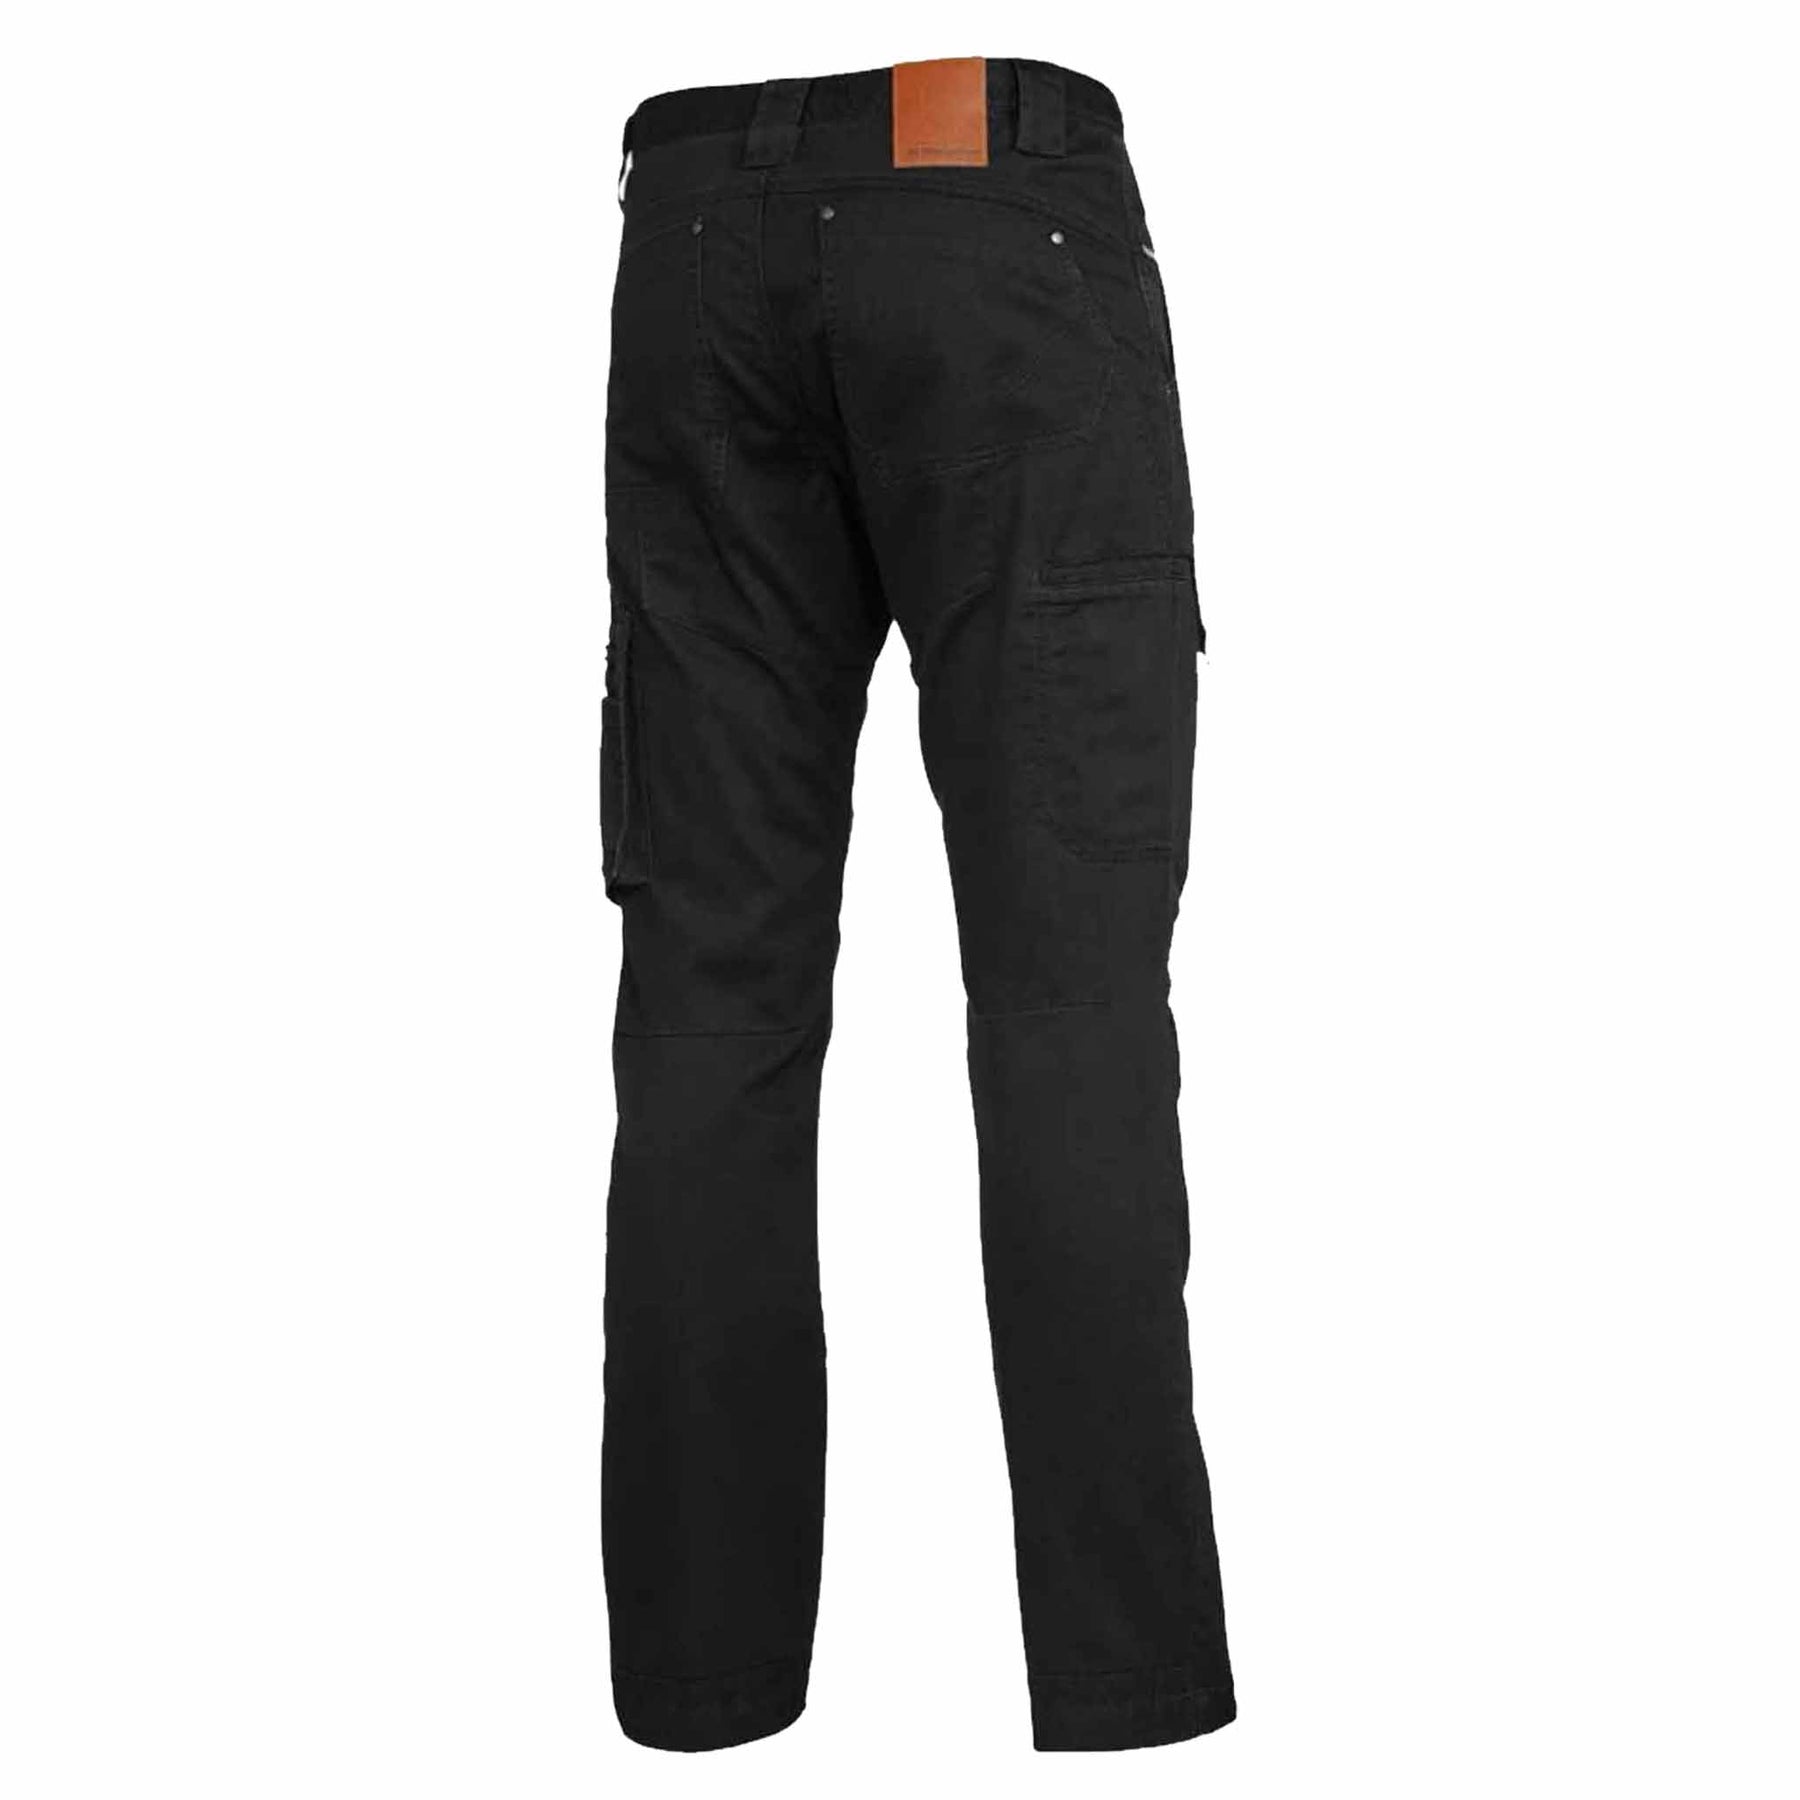 black narrow tradie summer pants back view